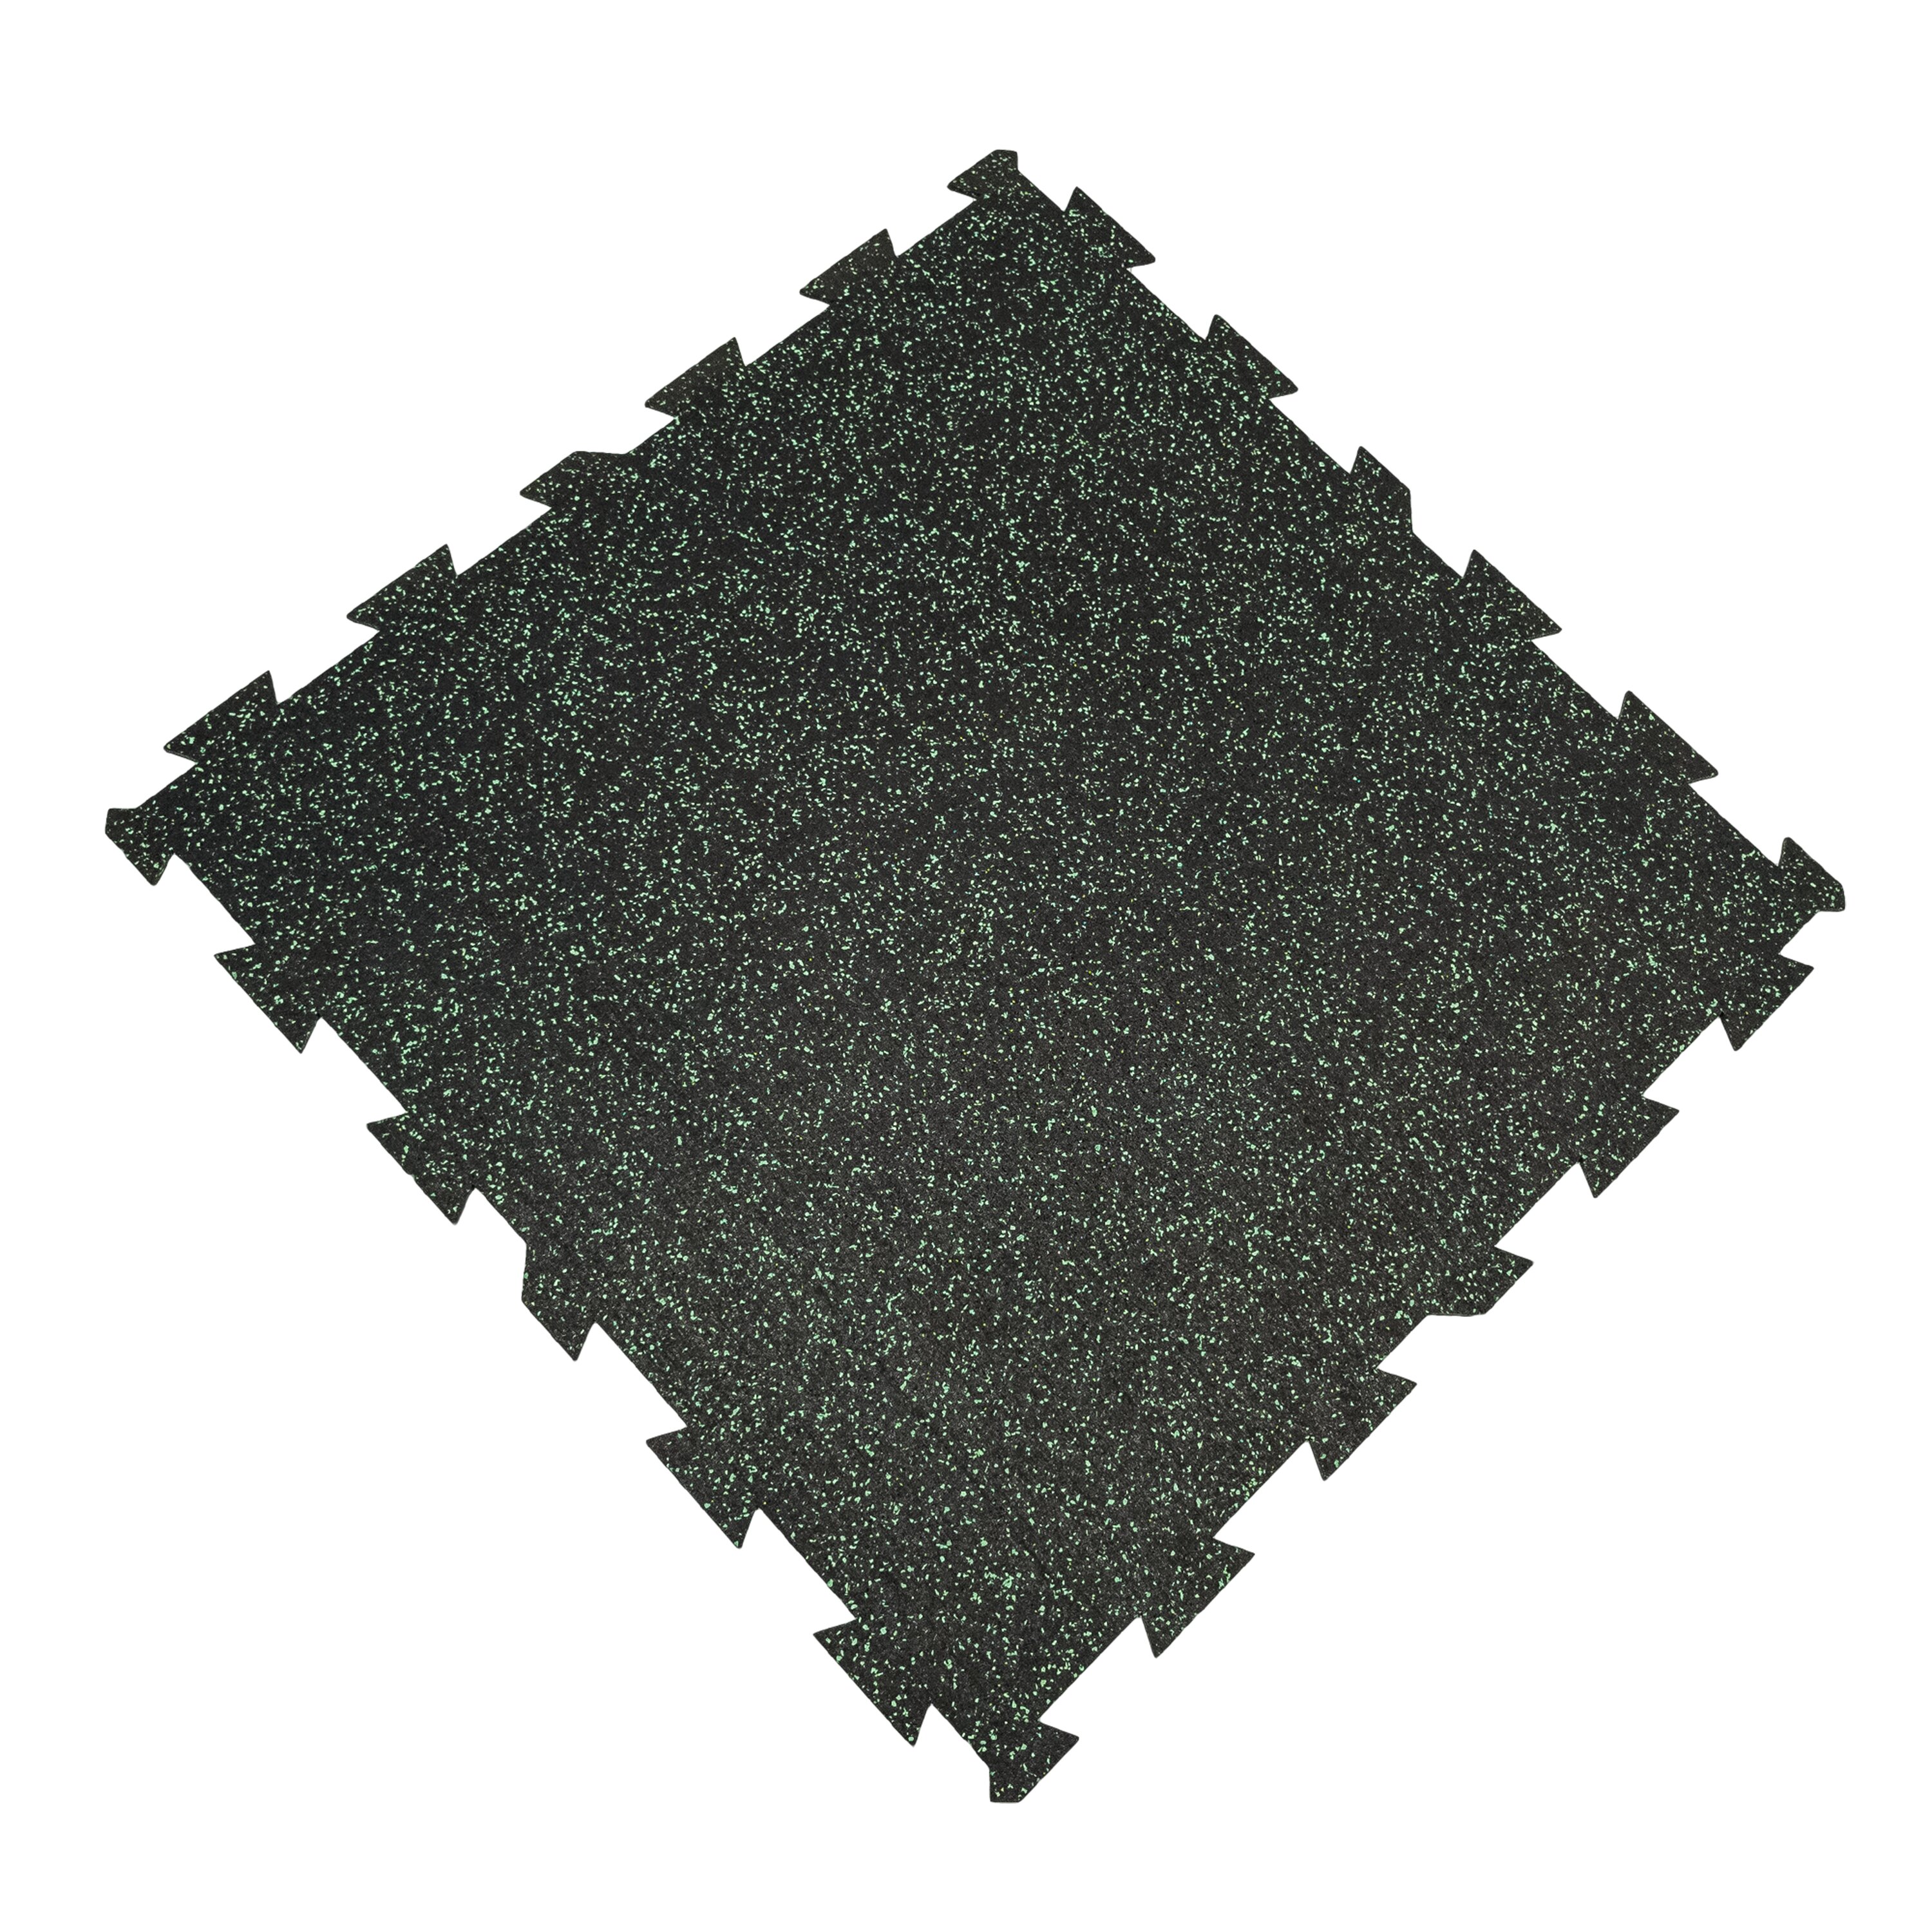 Černo-zelená podlahová guma FLOMA FitFlo SF1050 - délka 100 cm, šířka 100 cm, výška 0,8 cm